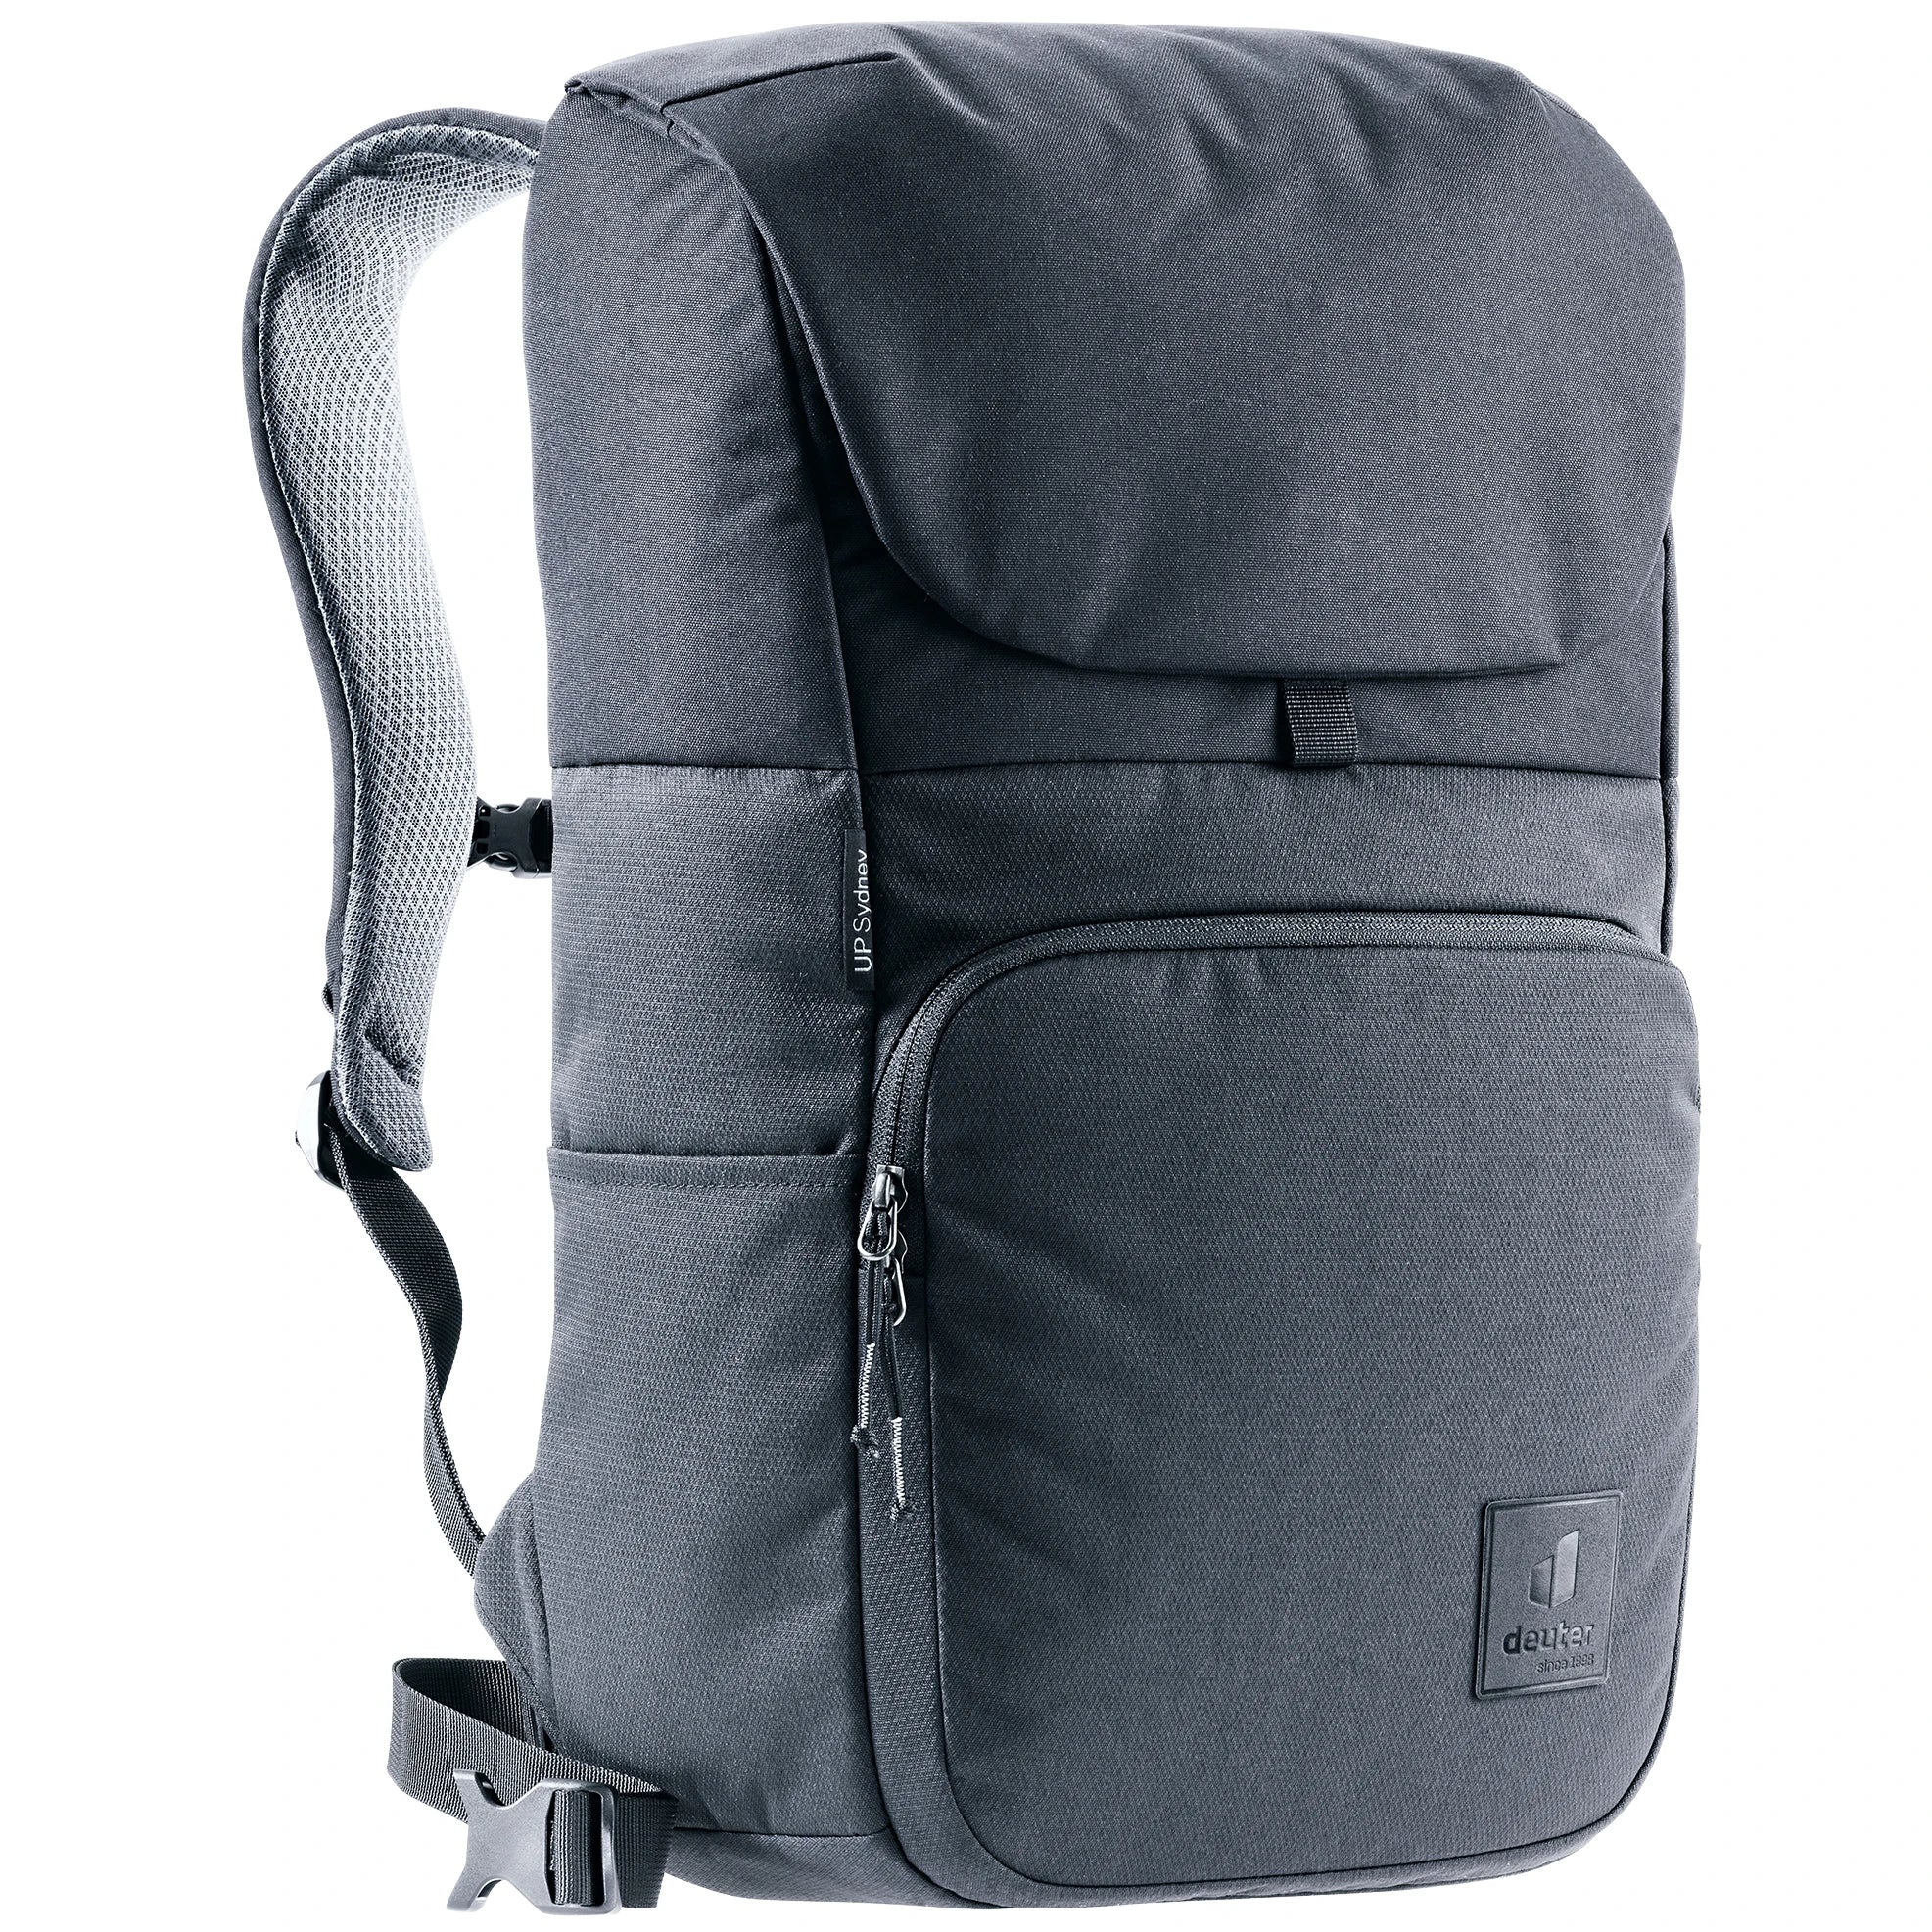 Deuter Daypack UP Sydney backpack 50 cm - Black